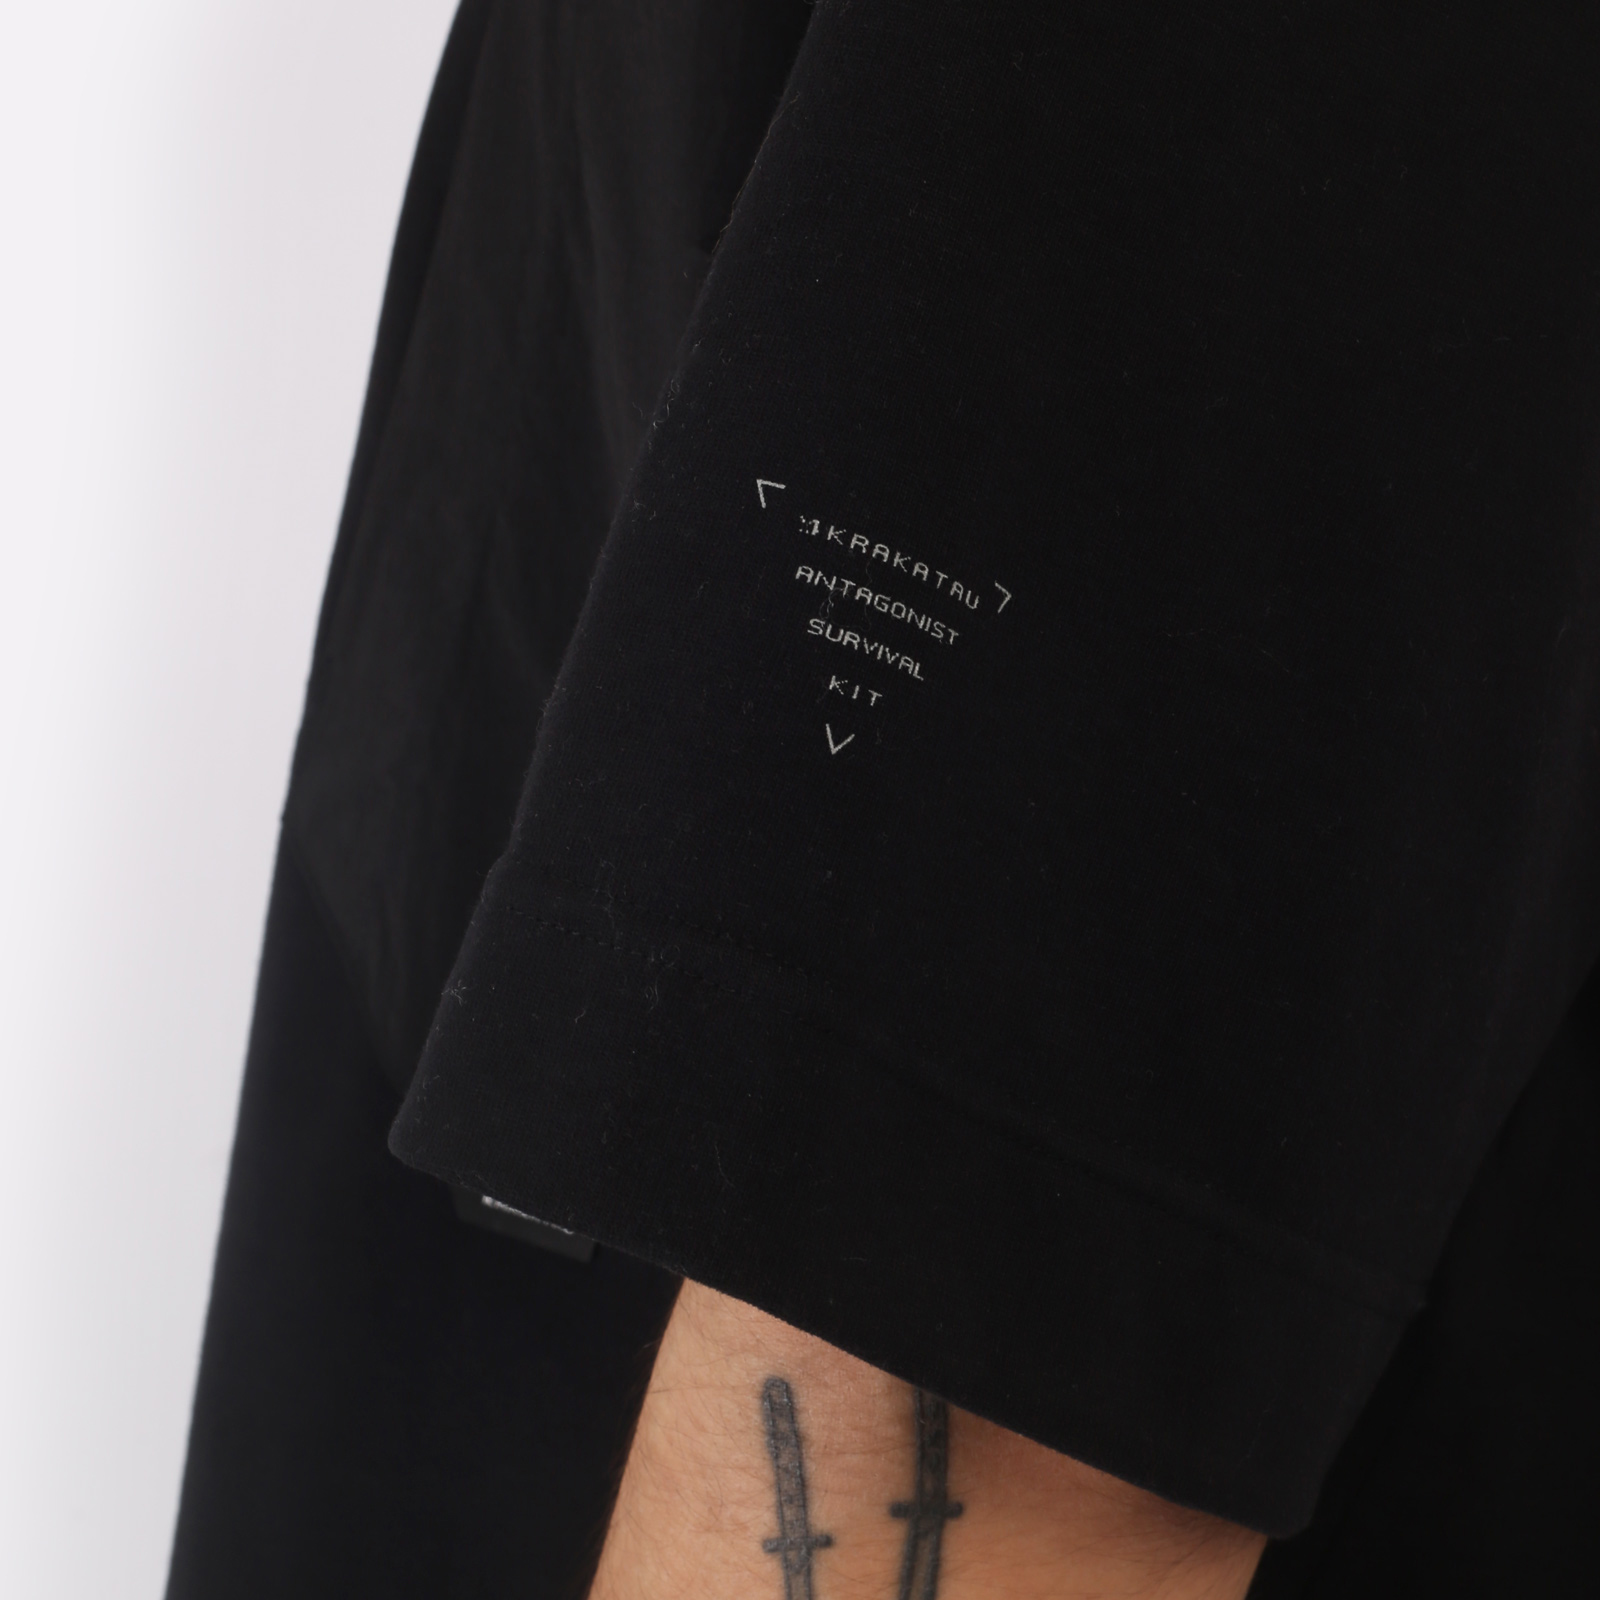 мужская футболка KRAKATAU Tm114  (Tm114-1-черный)  - цена, описание, фото 6